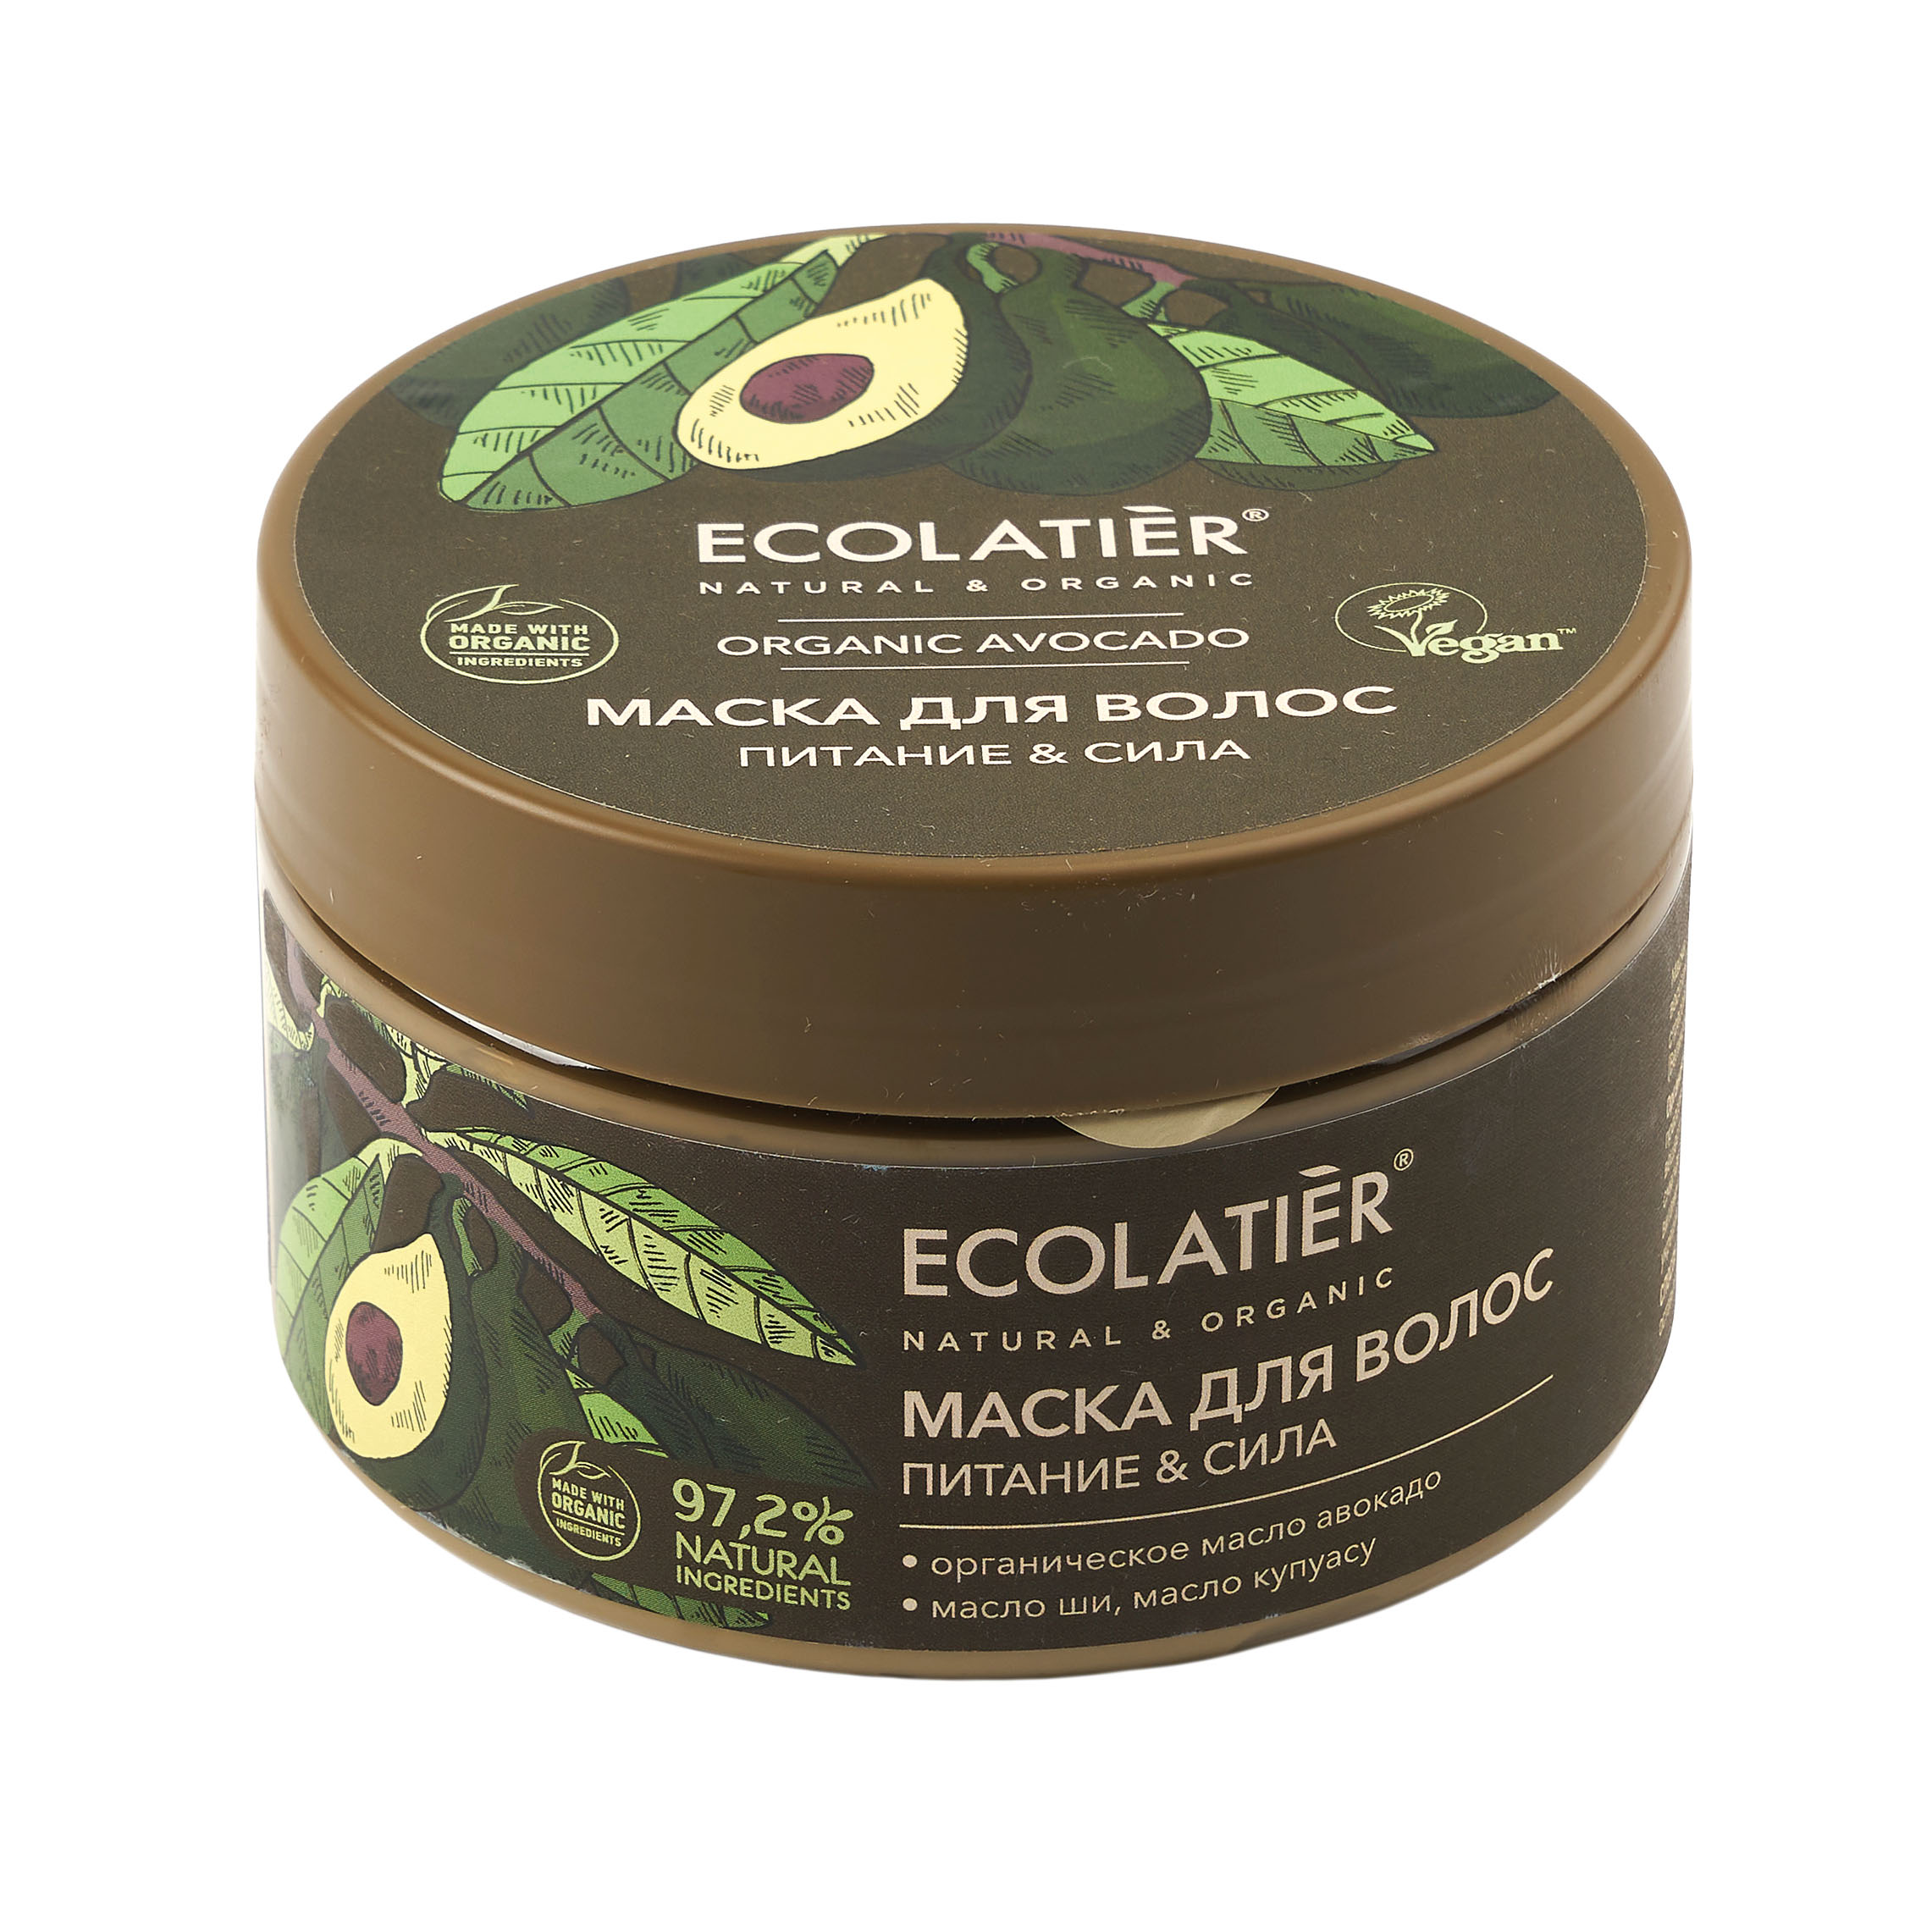 Маска для волос Ecolatier Green Питание и сила, 250 мл маска основное питание care vital nutrition mask 200 мл